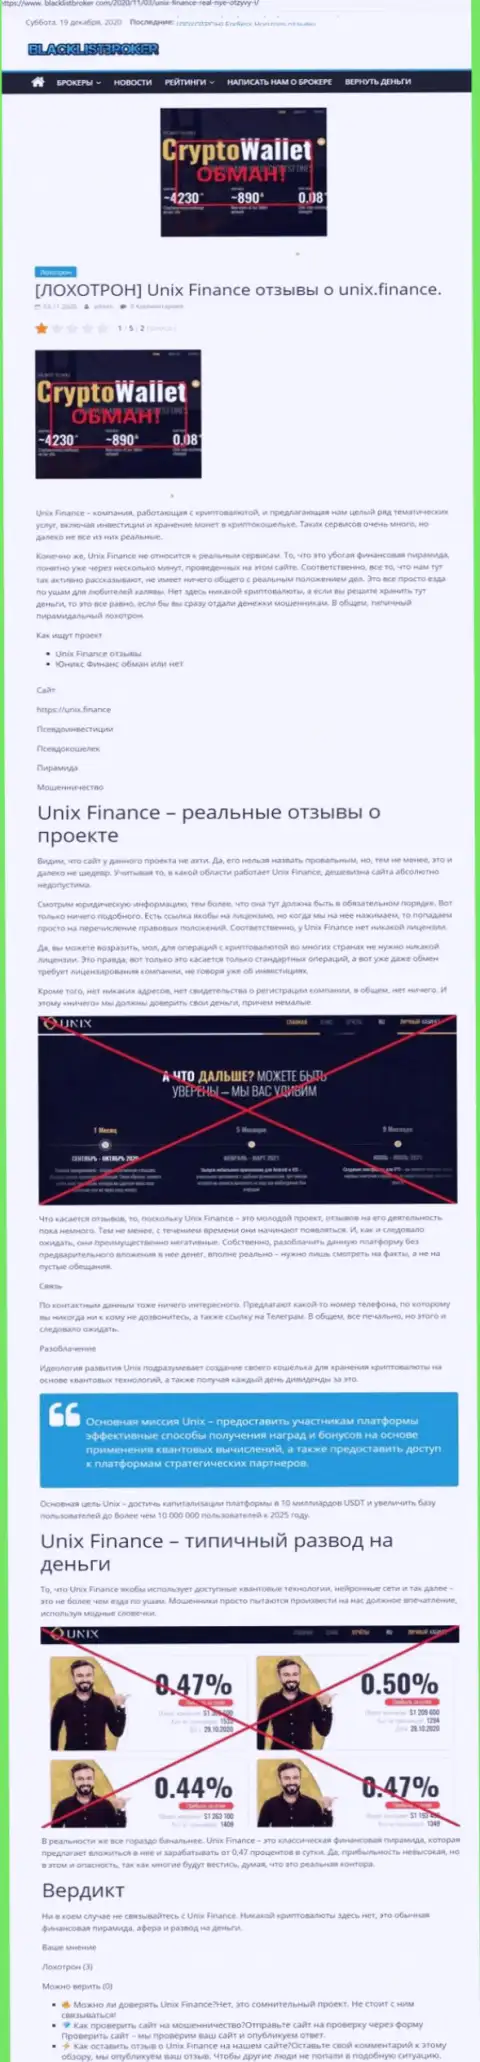 Unix Finance ГРАБЯТ !!! Факты противозаконных комбинаций